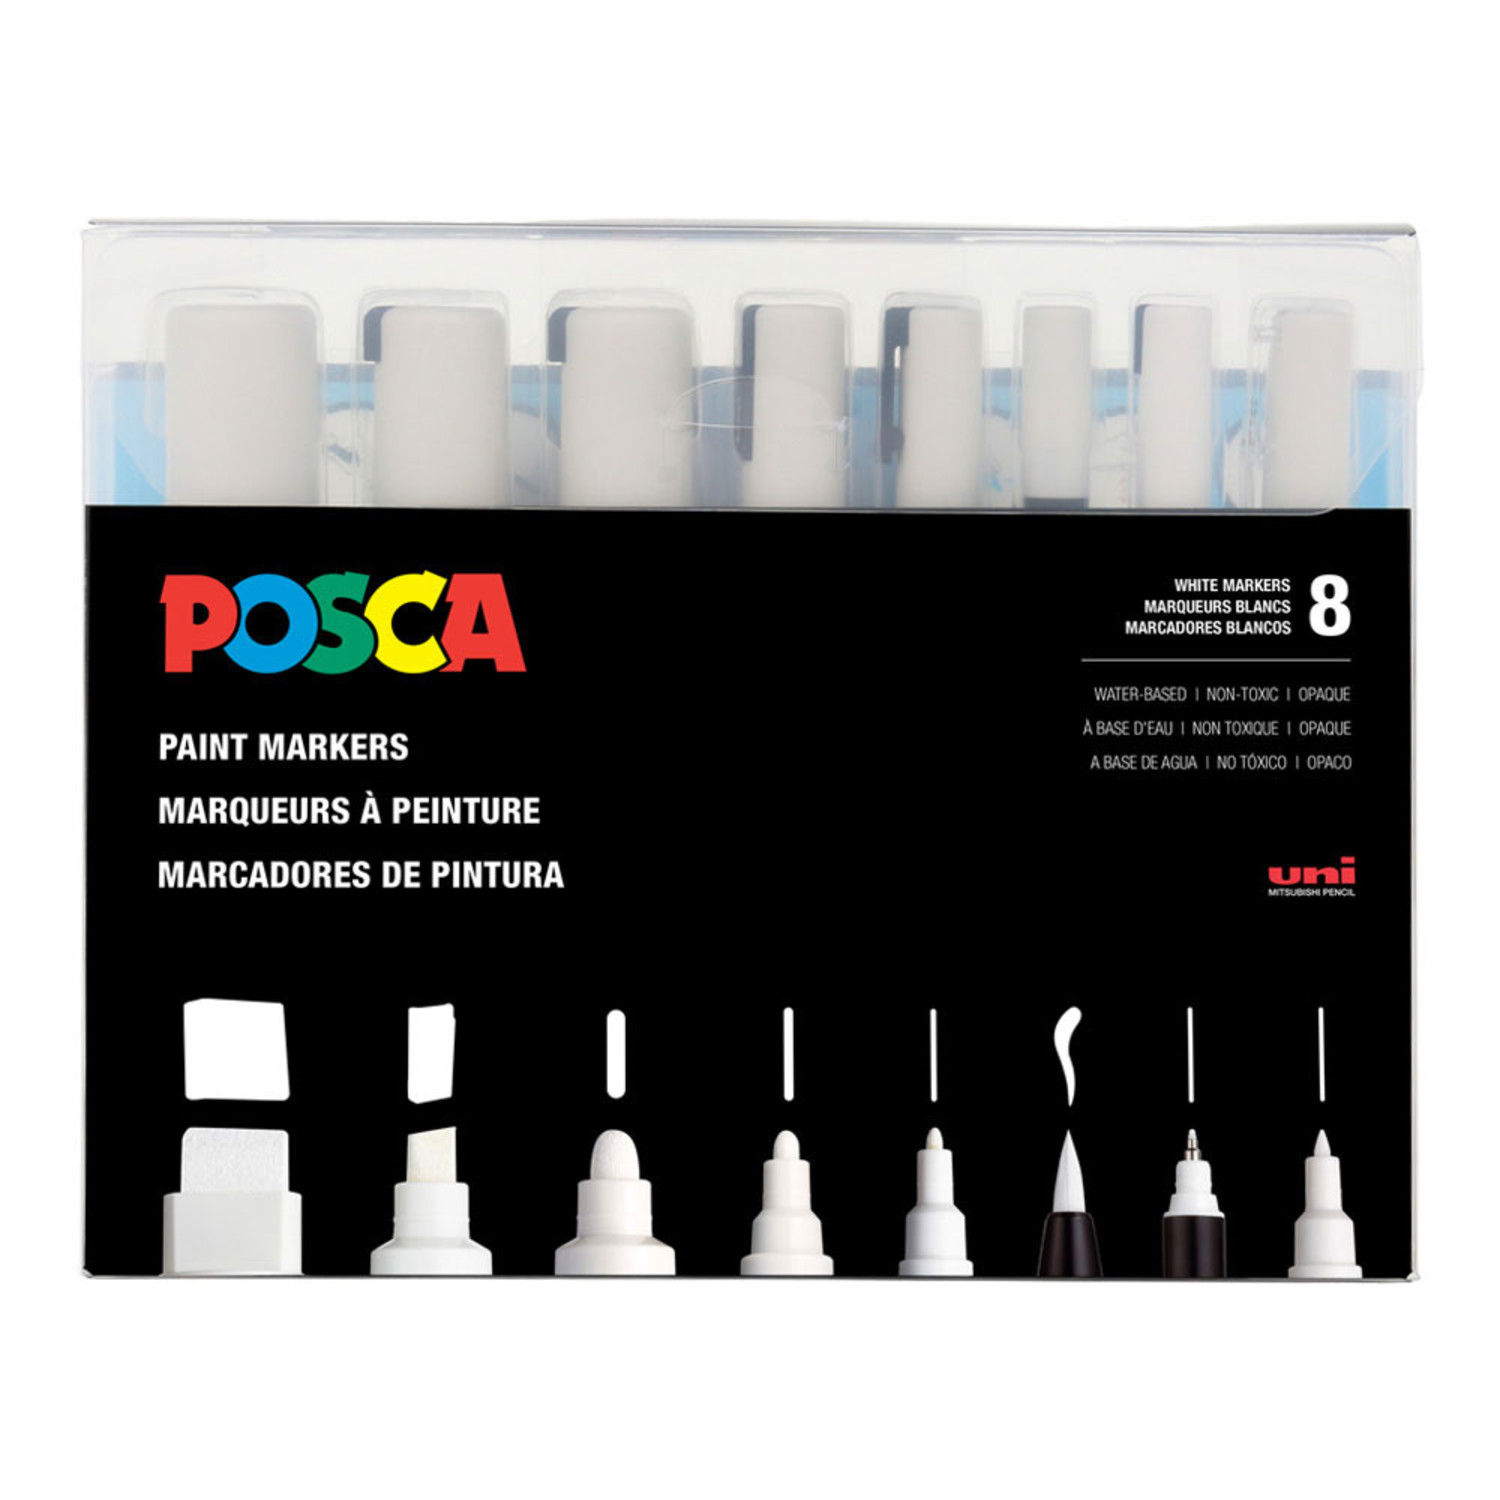 Posca Acrylic Paint Marker Set- PC-1MR 8 Color Basic Set (Extra